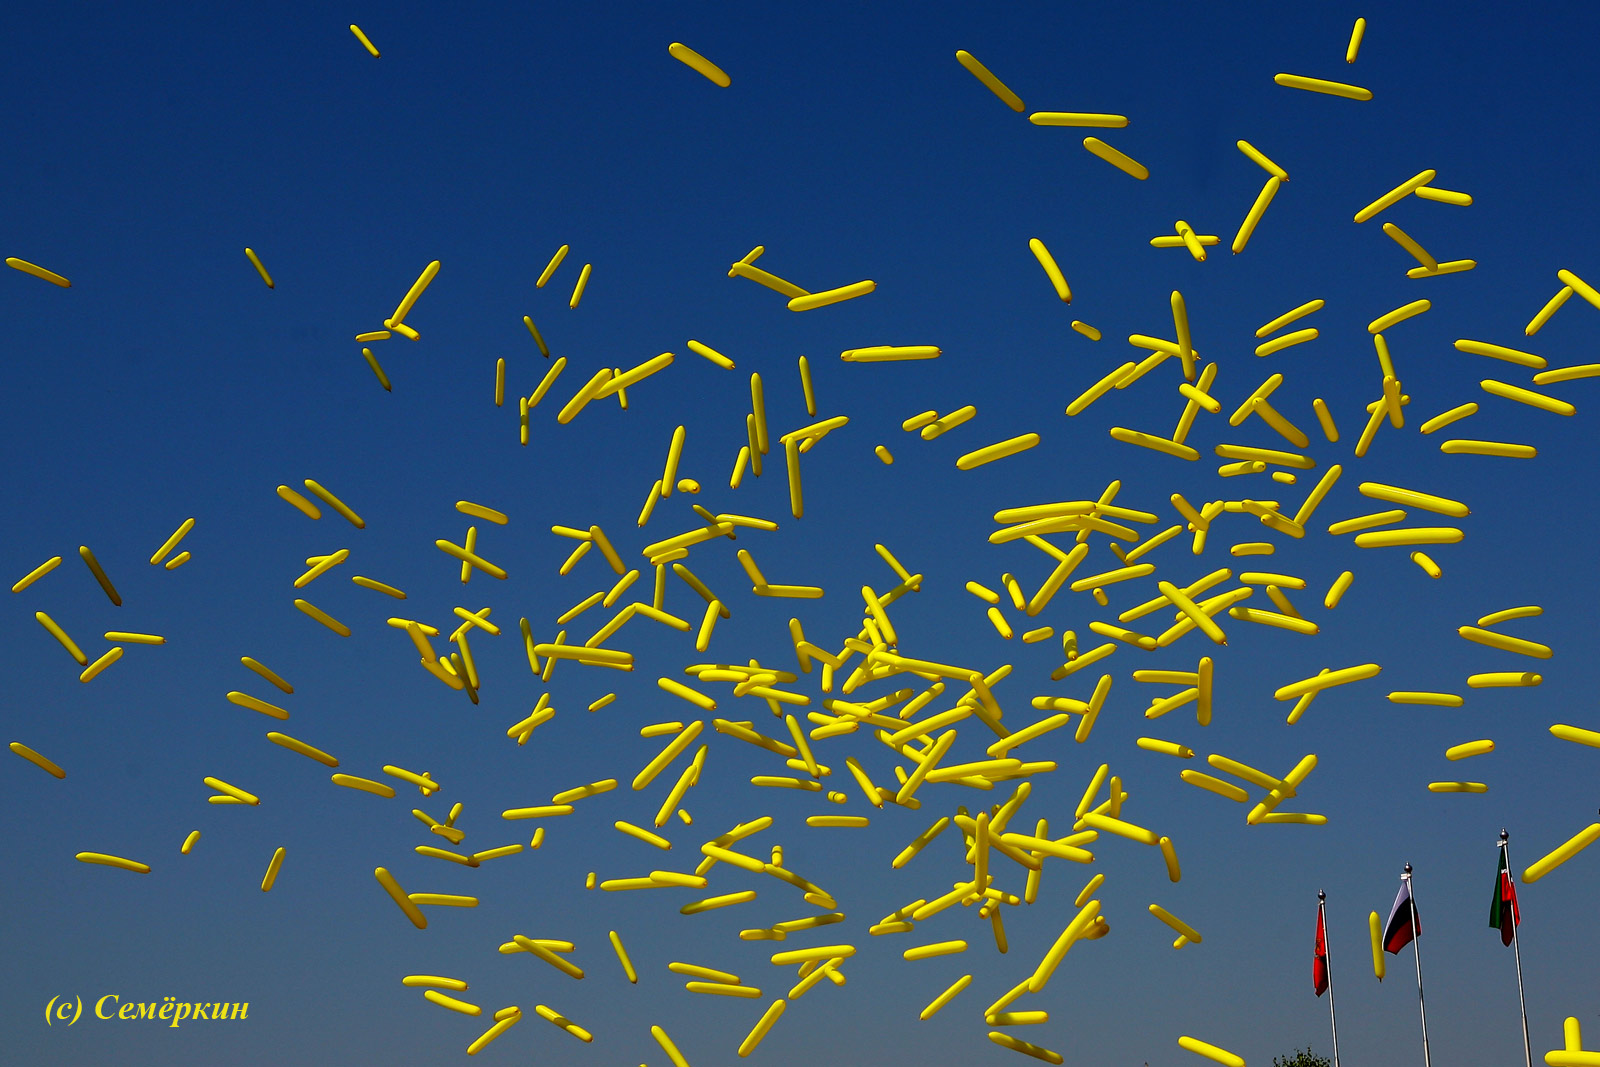 Сабантуй в Красноярске - бутафорский чак-чак в виде воздушных шариков улетает в небо